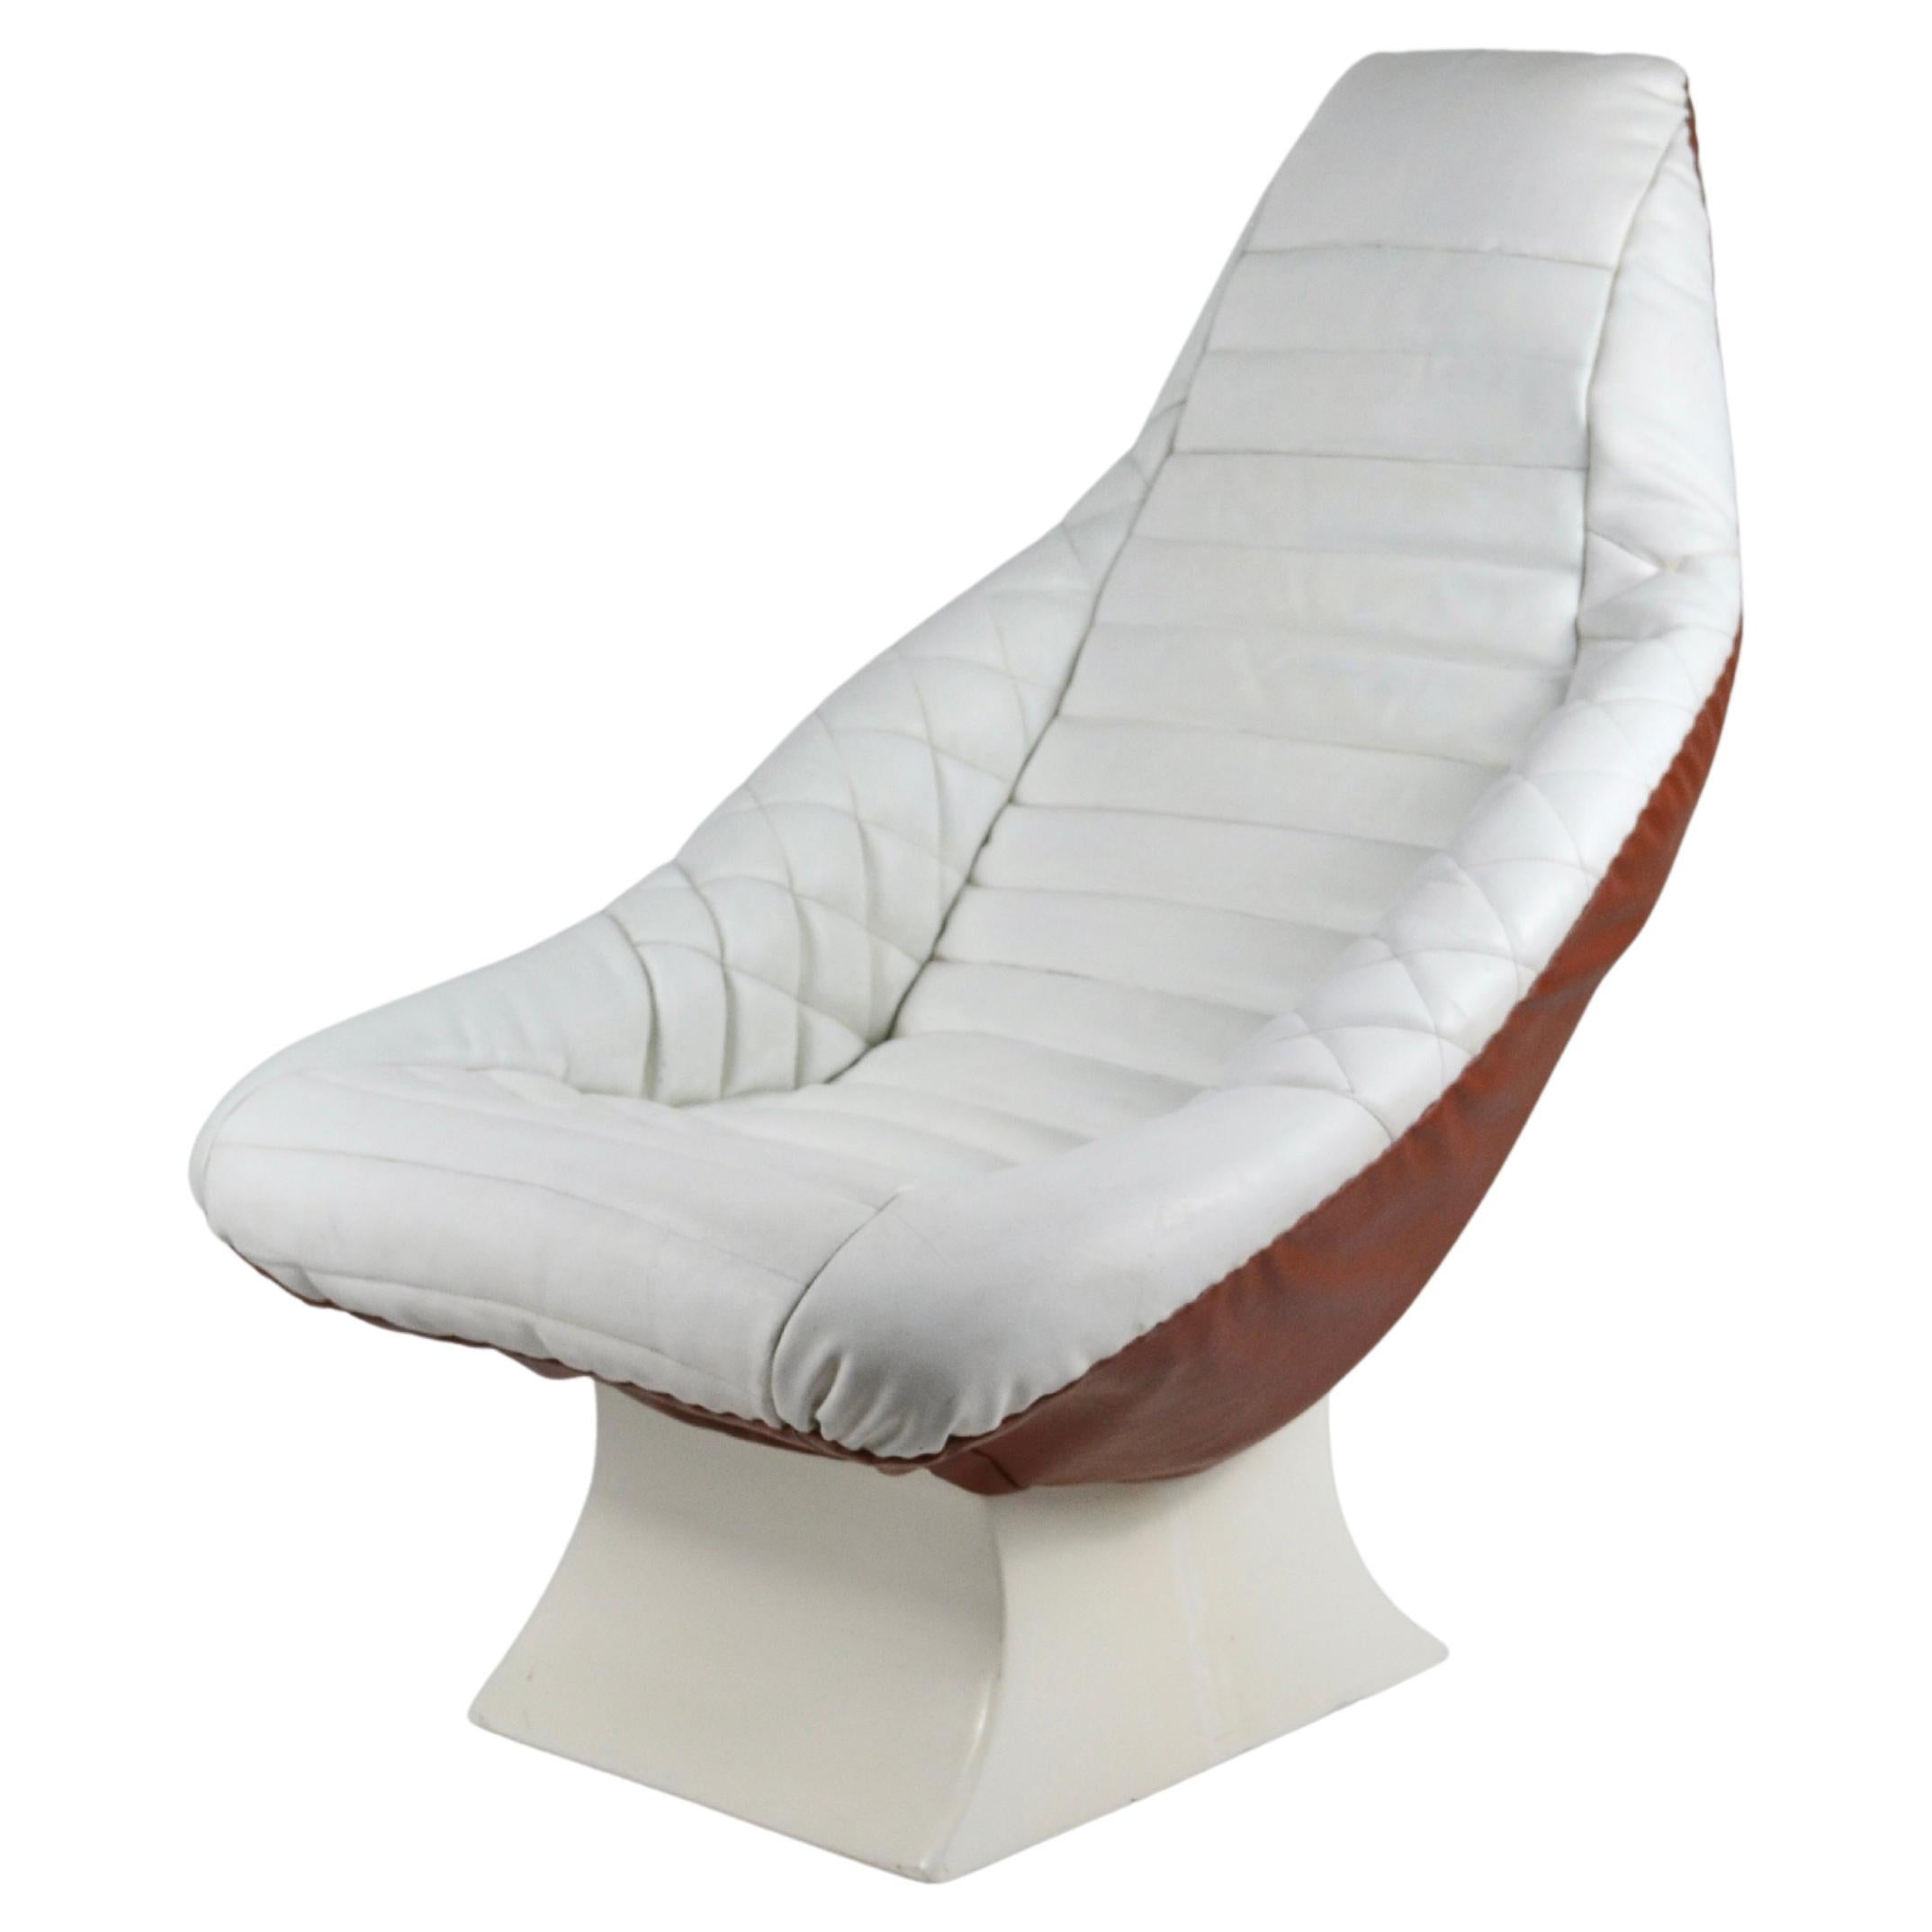 Vintage-Sessel aus Leder und Fiberglas im Space- Age-Stil, 1970er Jahre